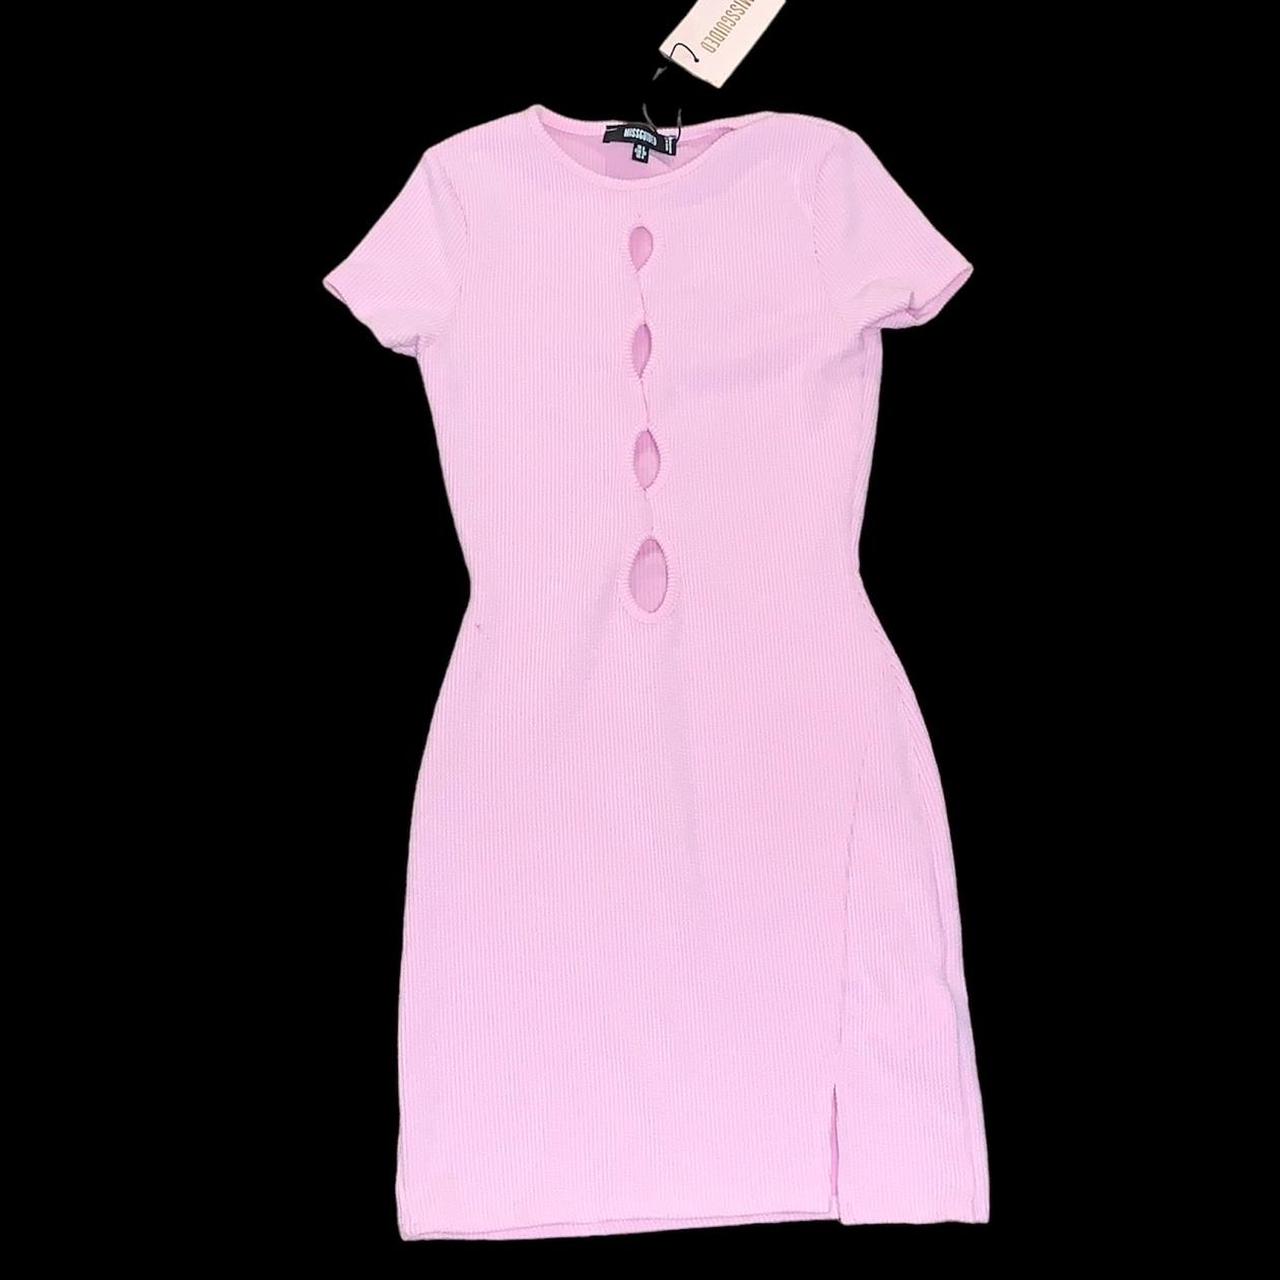 Missguided Women's Pink Dress | Depop